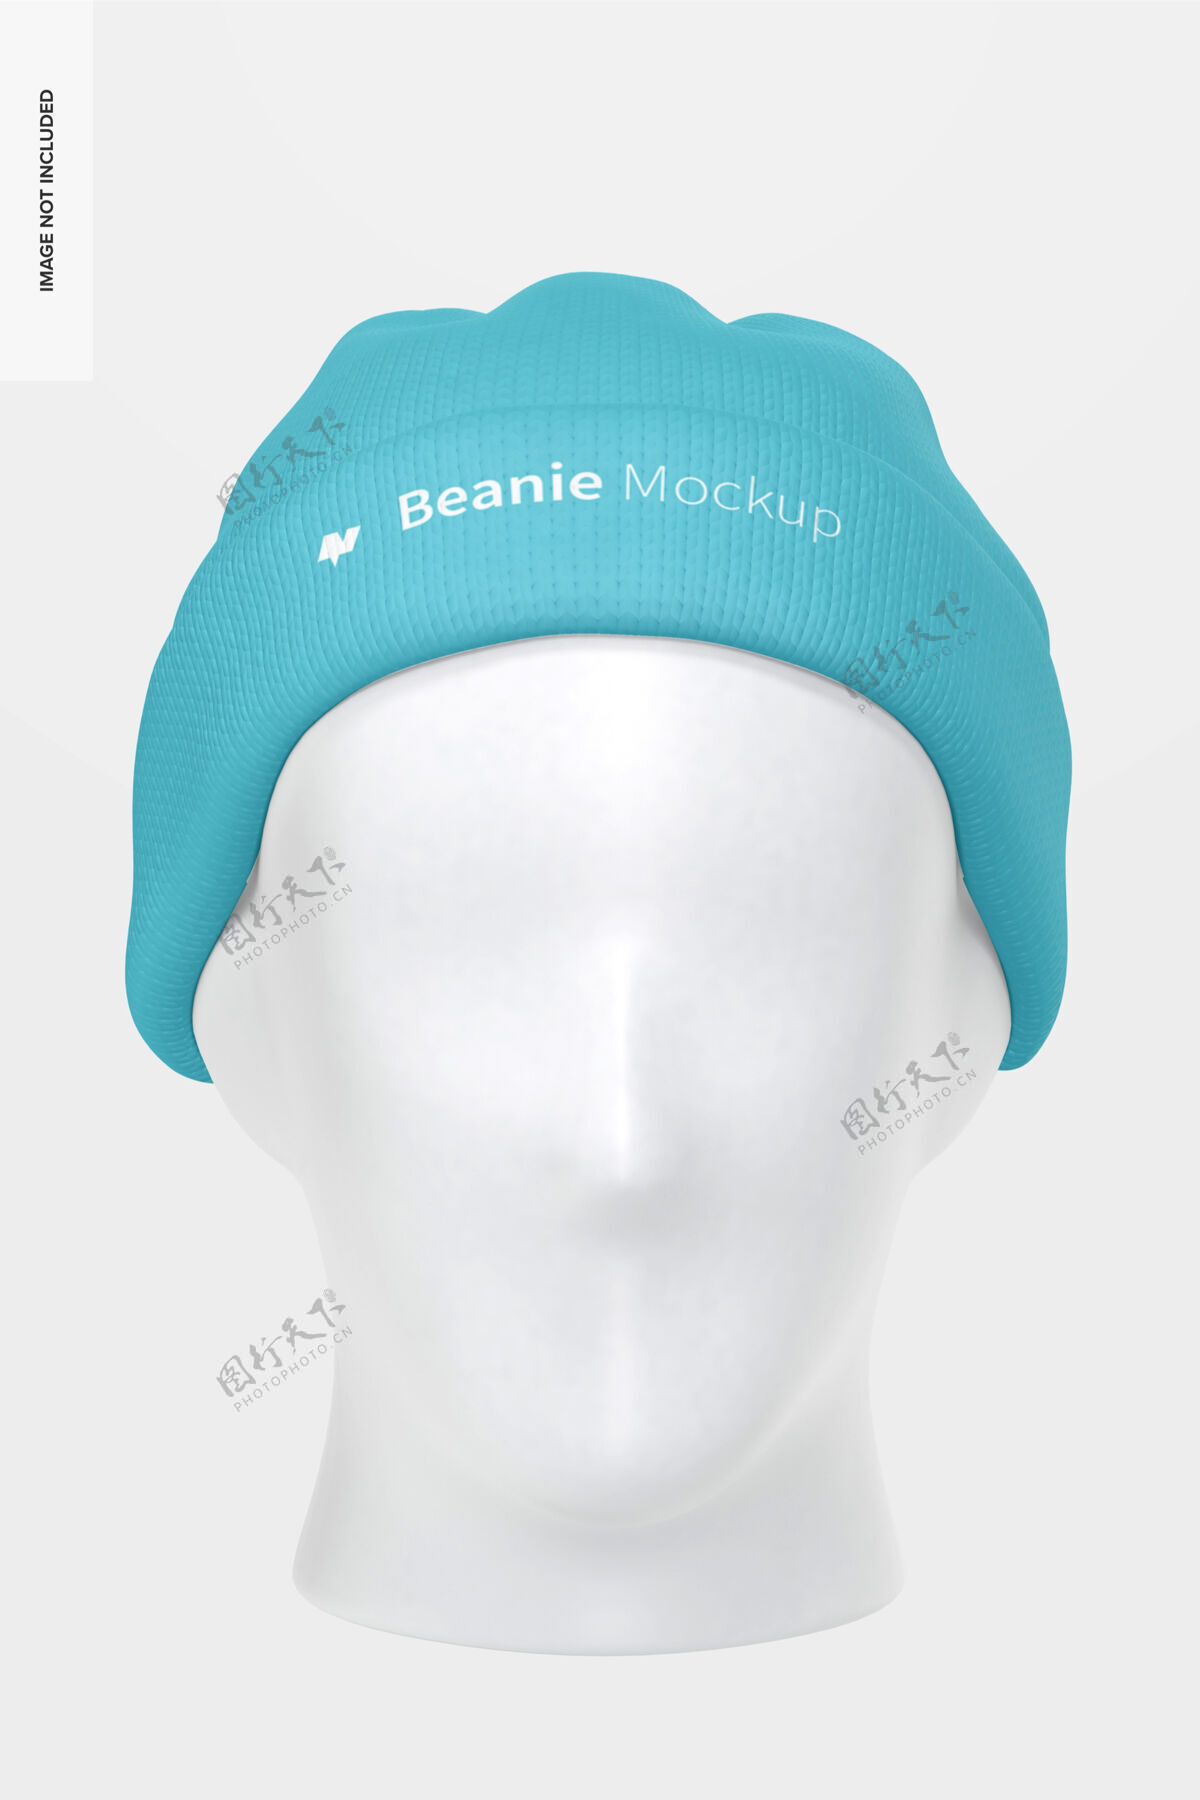 模型带头部模型的Beanie 正视图服装针织帽子